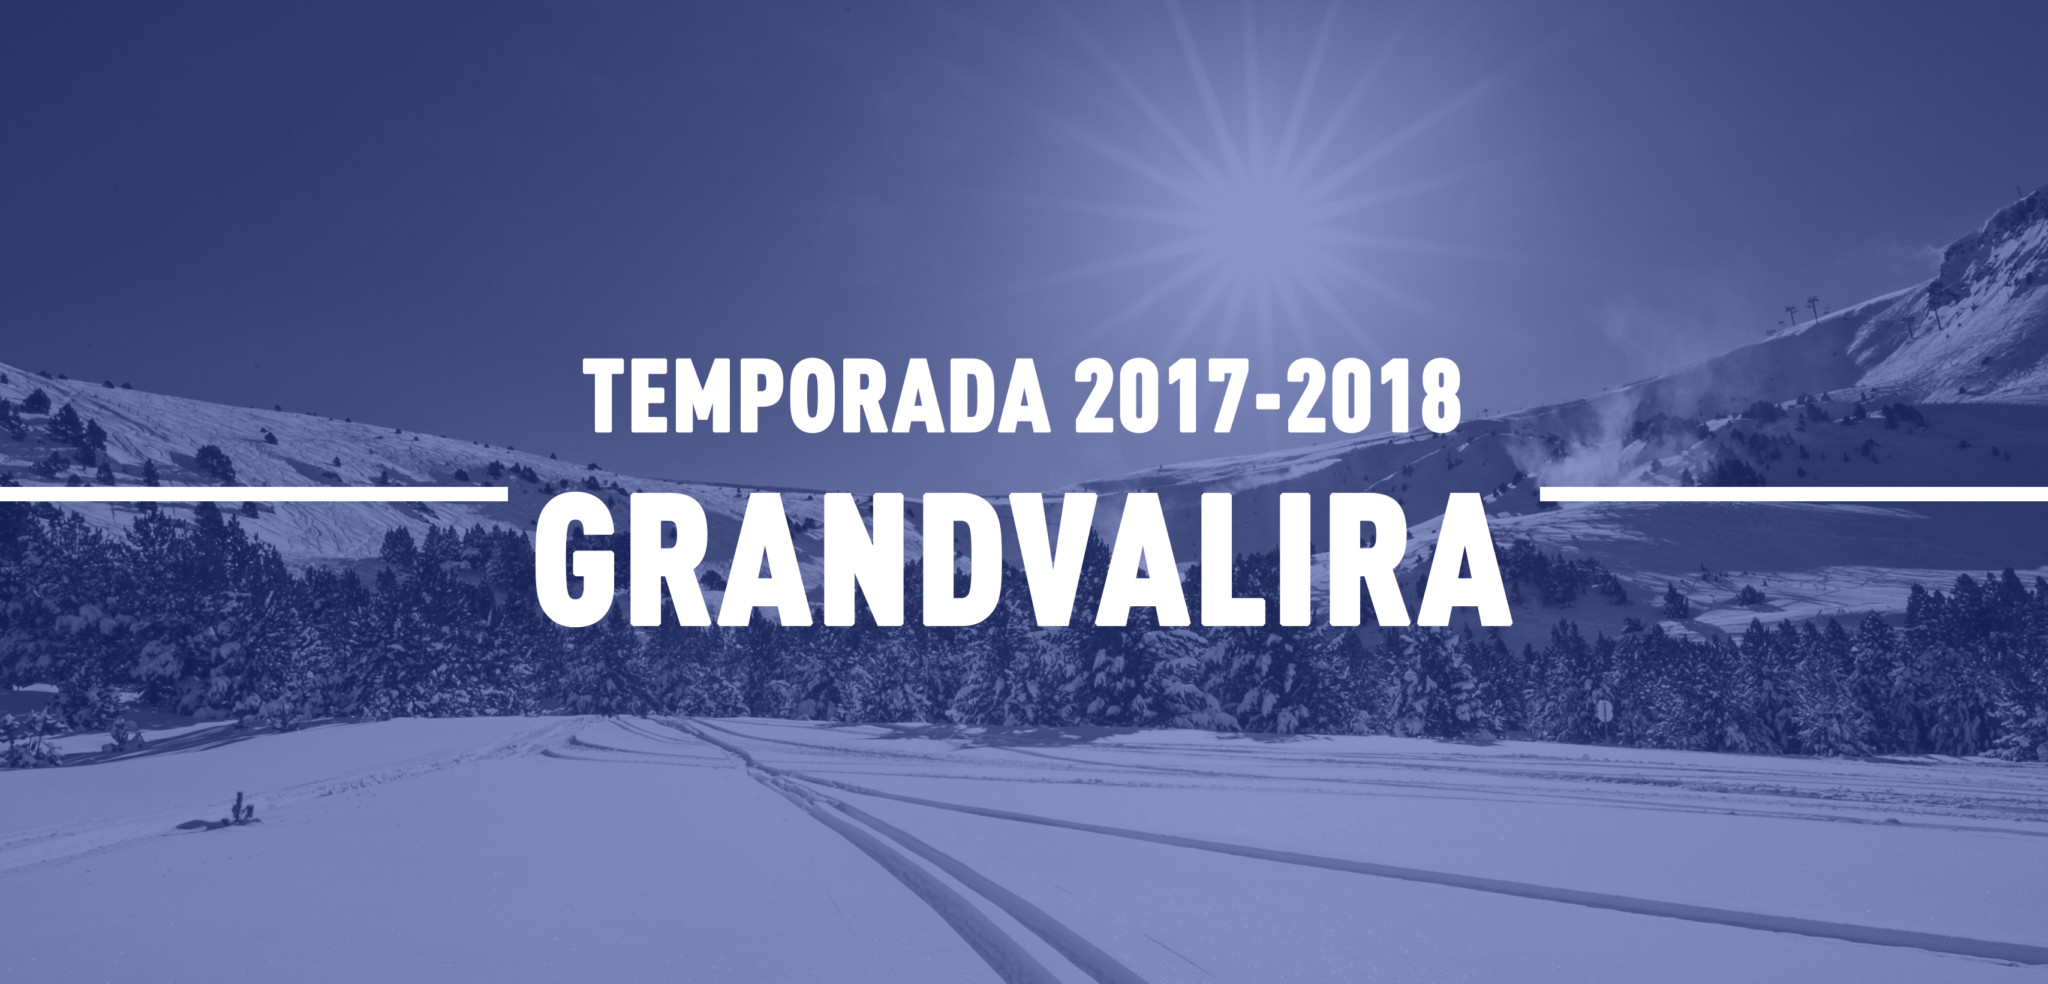 Grandvalira 2017-2018